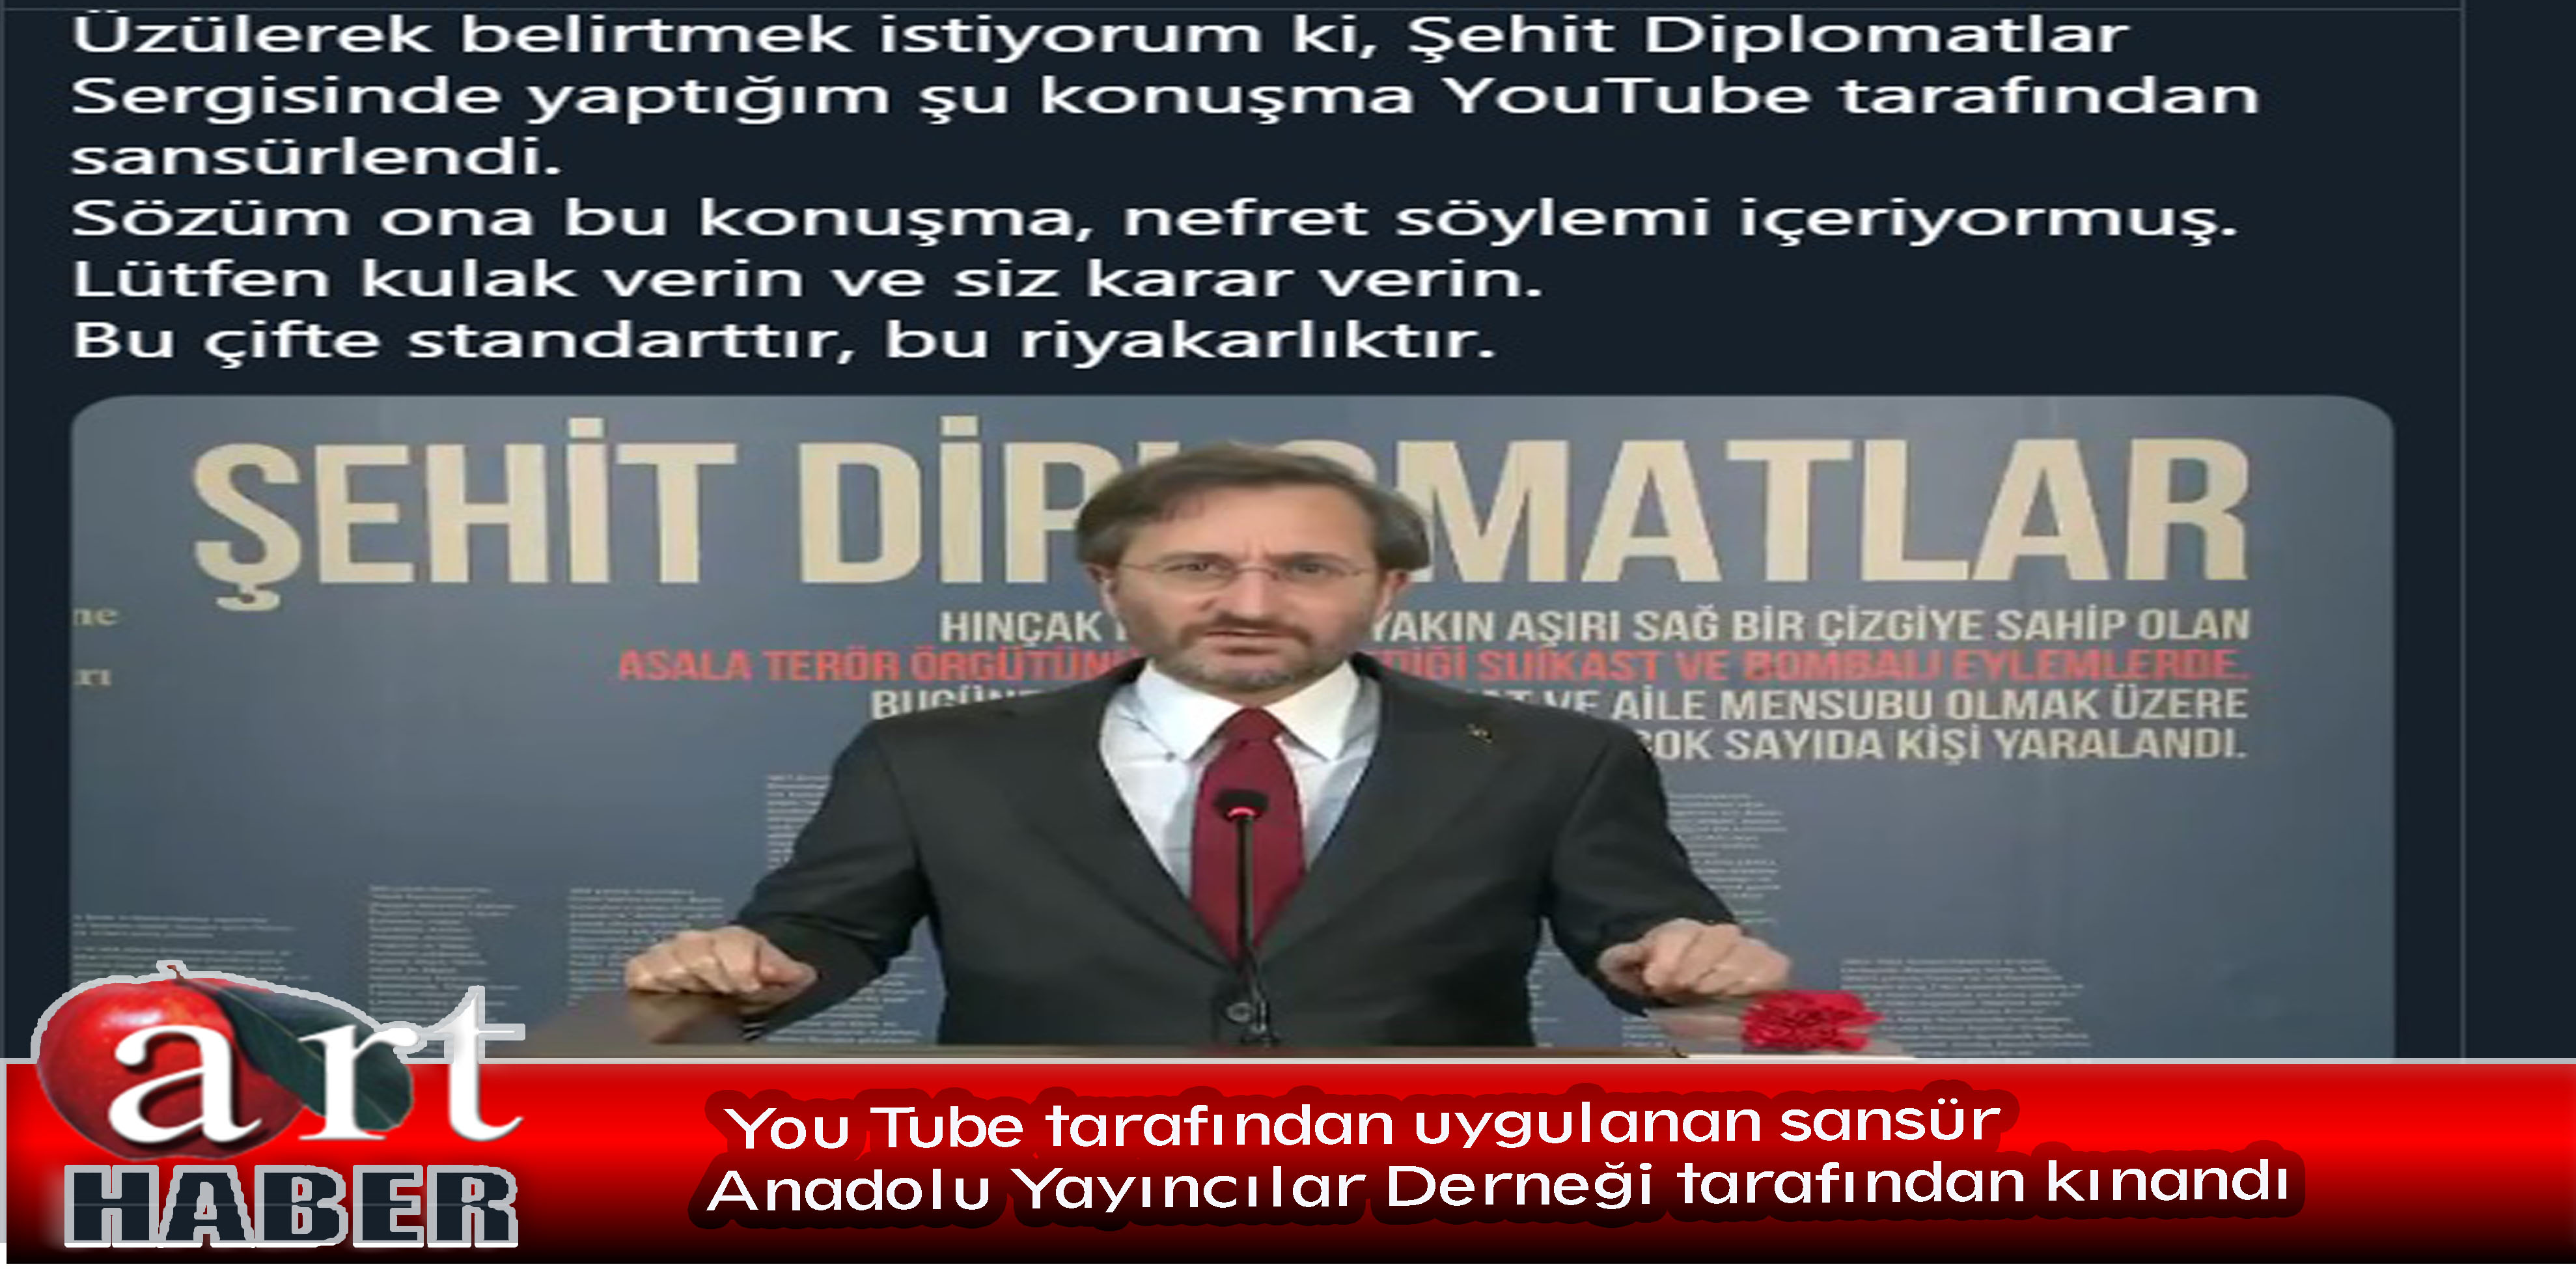 You Tube tarafından uygulanan sansür Anadolu yayıncılar Derneği tarafından kınandı